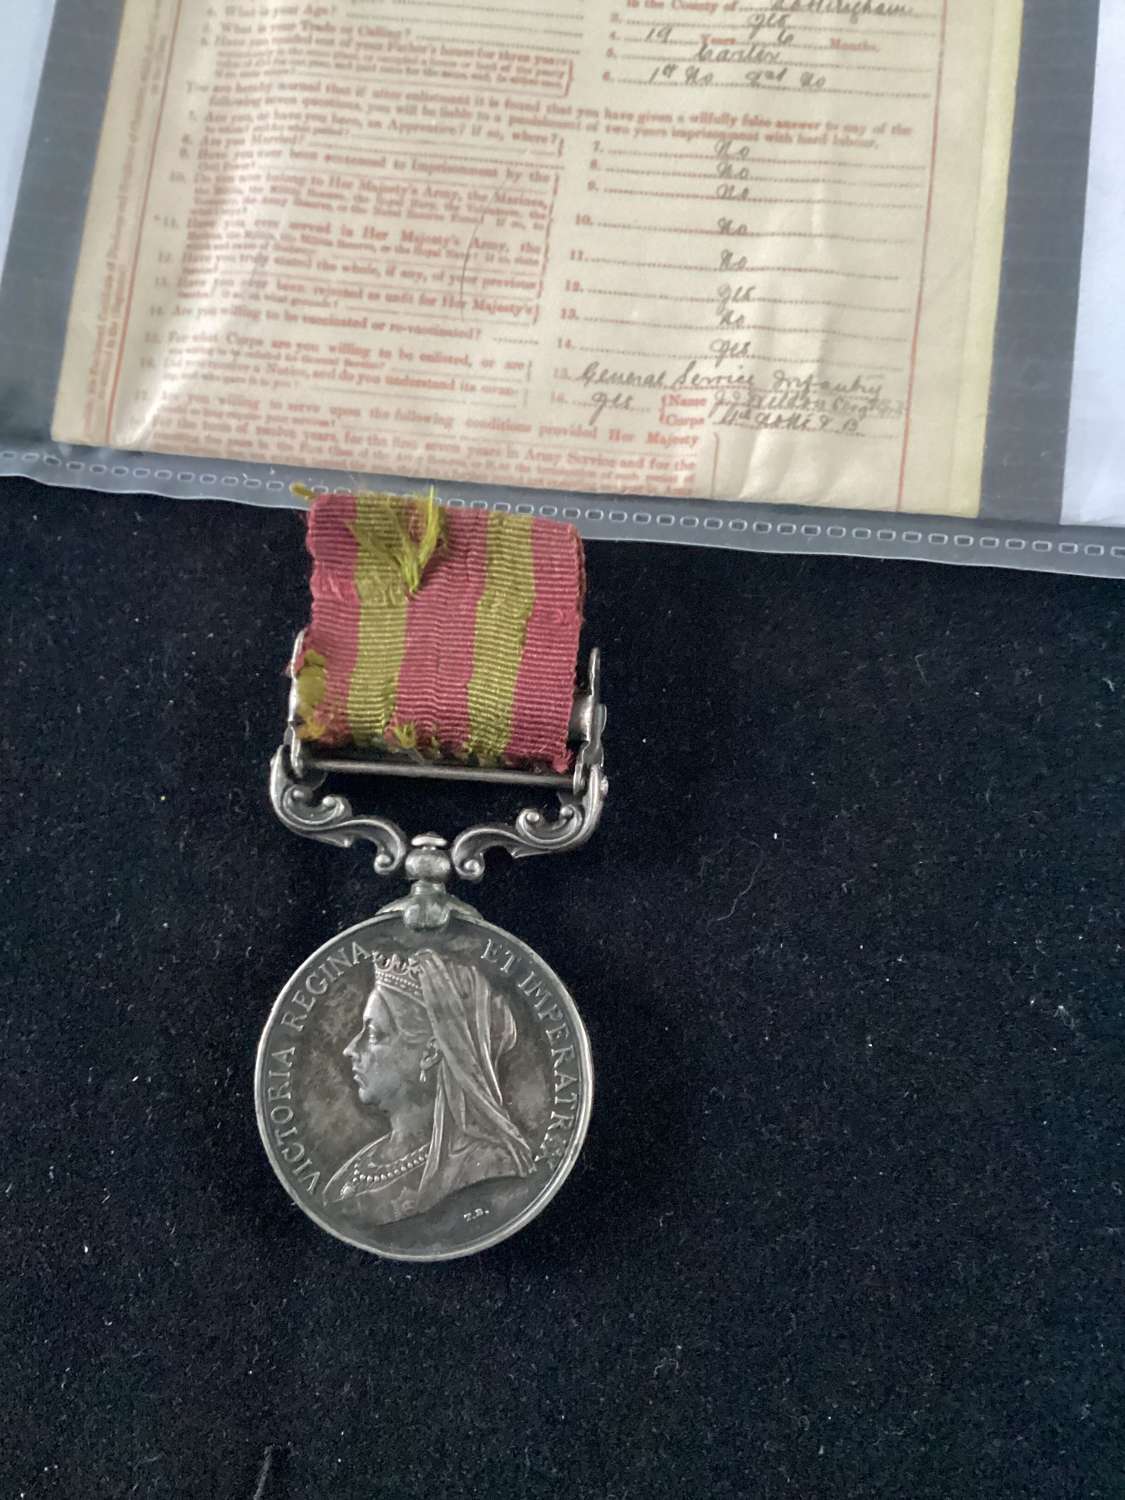 1 Bar India Medal 1895 2nd Derby Regiment